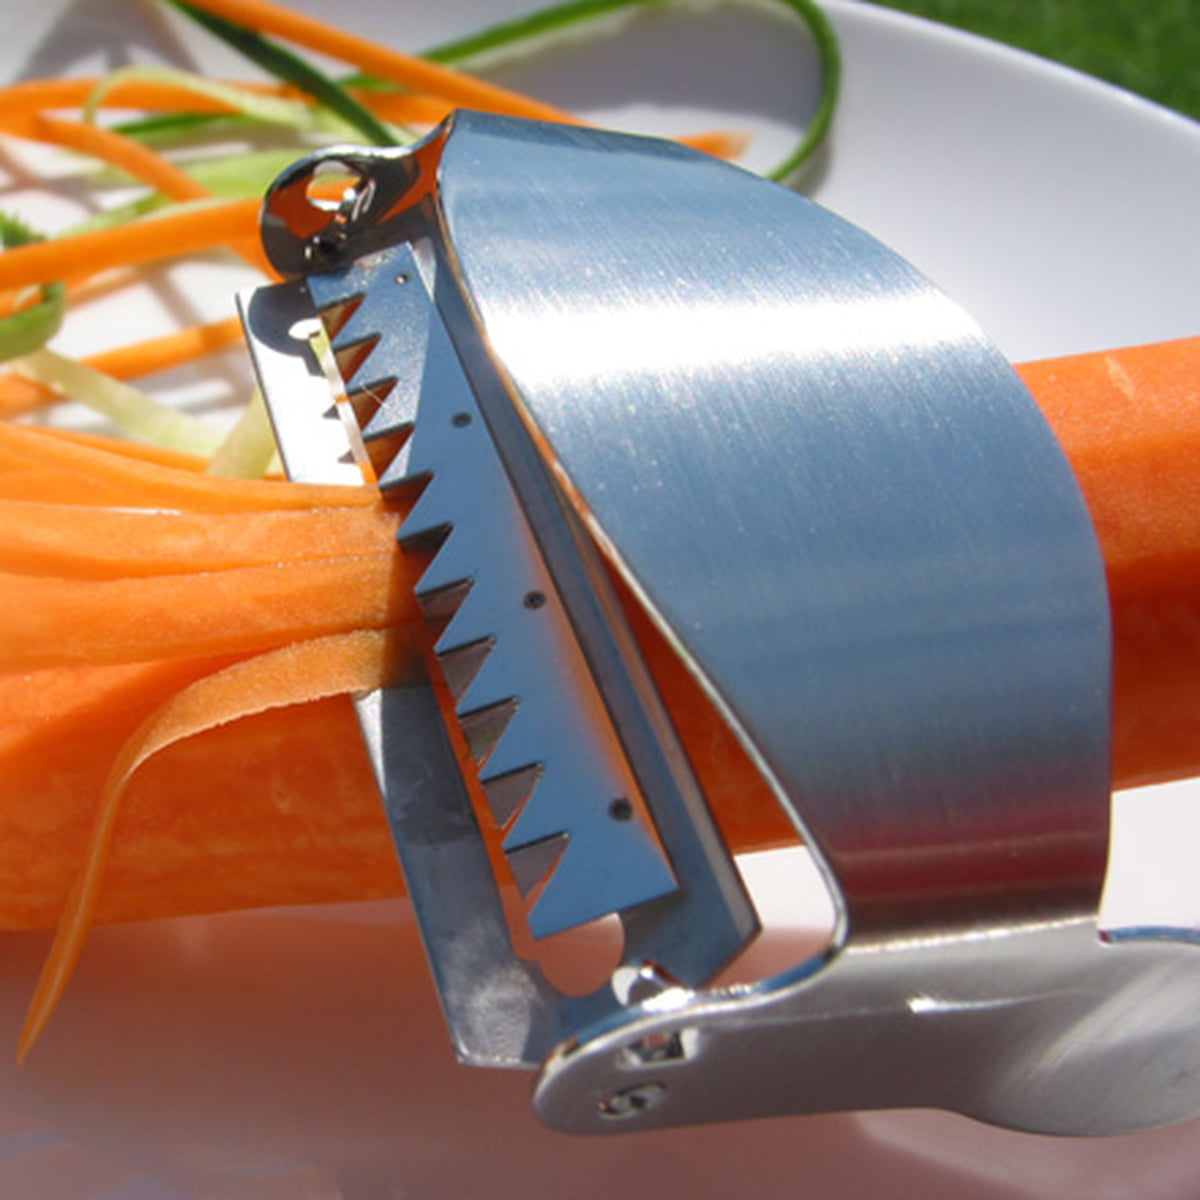 нож для корейской моркови фото